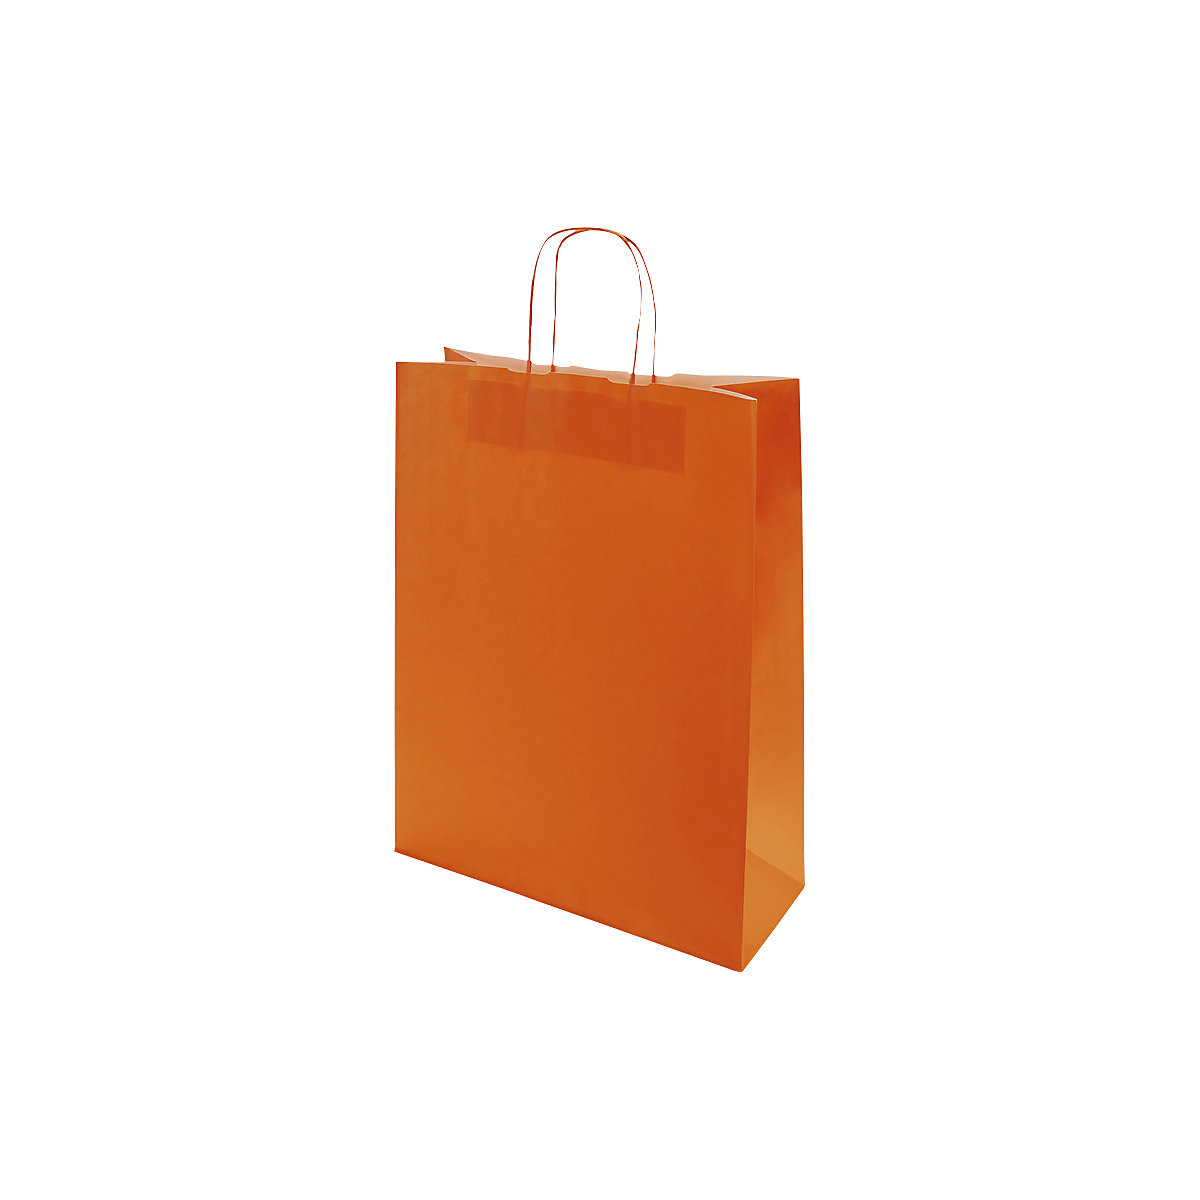 Papiertragetasche FRESH, orange, LxBxH 320 x 130 x 425 mm, 100 g/m², VE 250 Stk, ab 5 VE-2